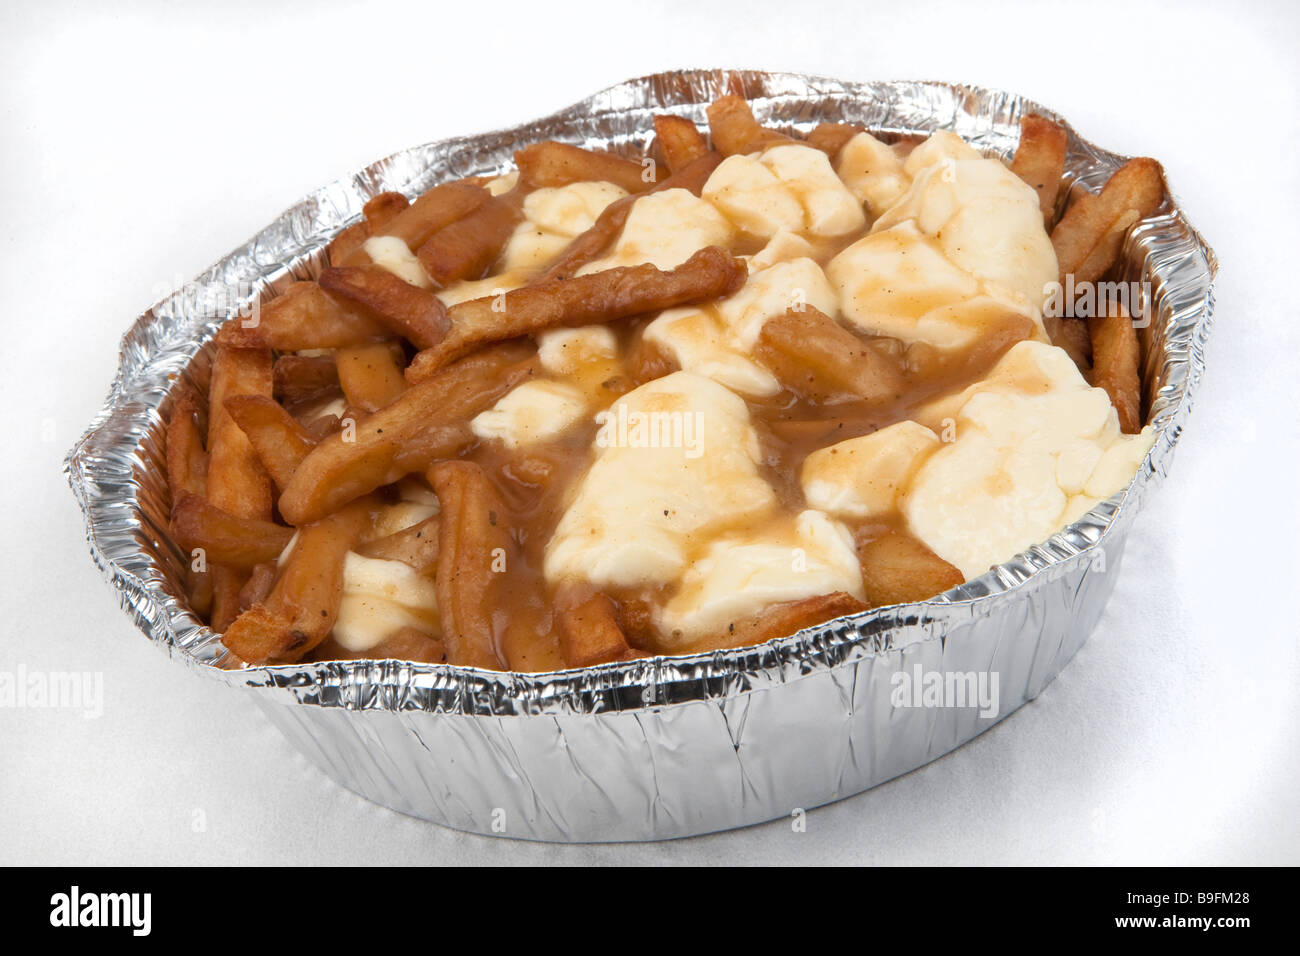 Una poutine sobre un fondo blanco poutine es un plato francés canadiense compuesto de papas fritas, coronado con queso fresco cuajada Foto de stock